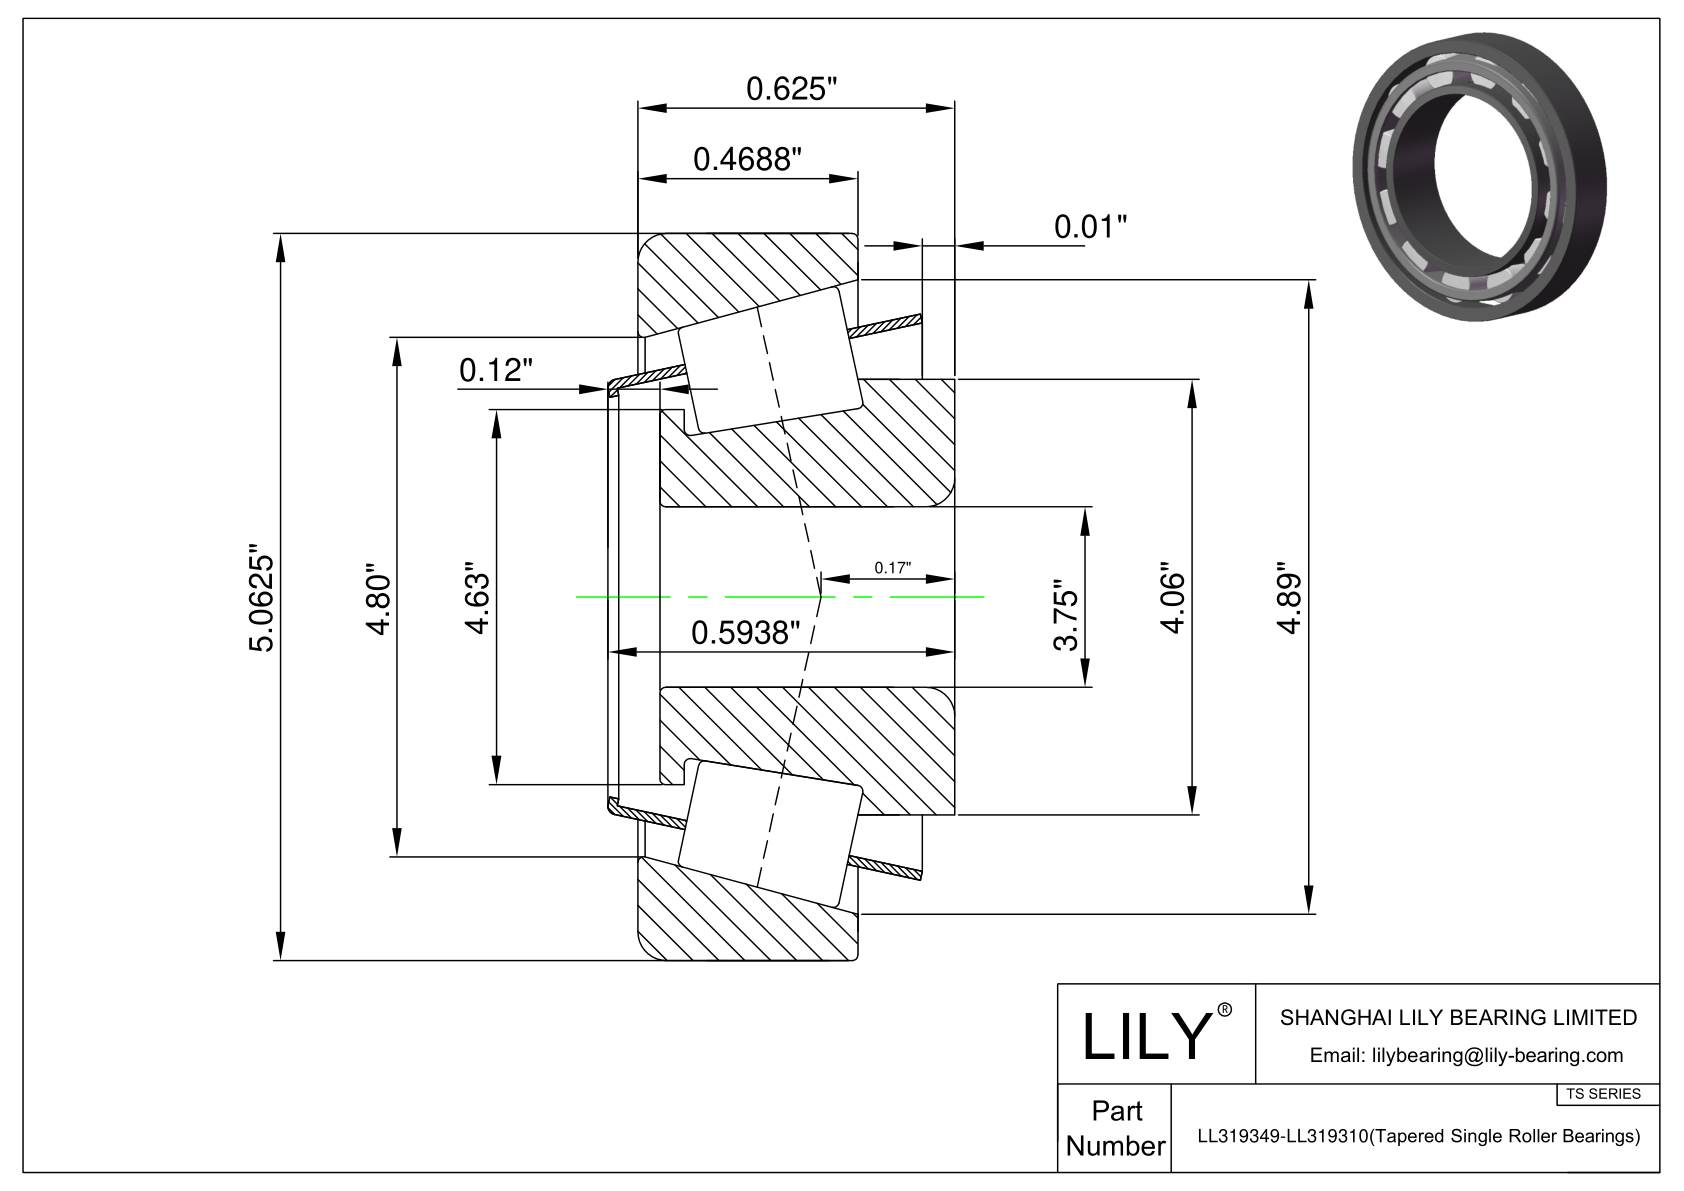 LL319349-LL319310 TS系列(圆锥单滚子轴承)(英制) CAD图形